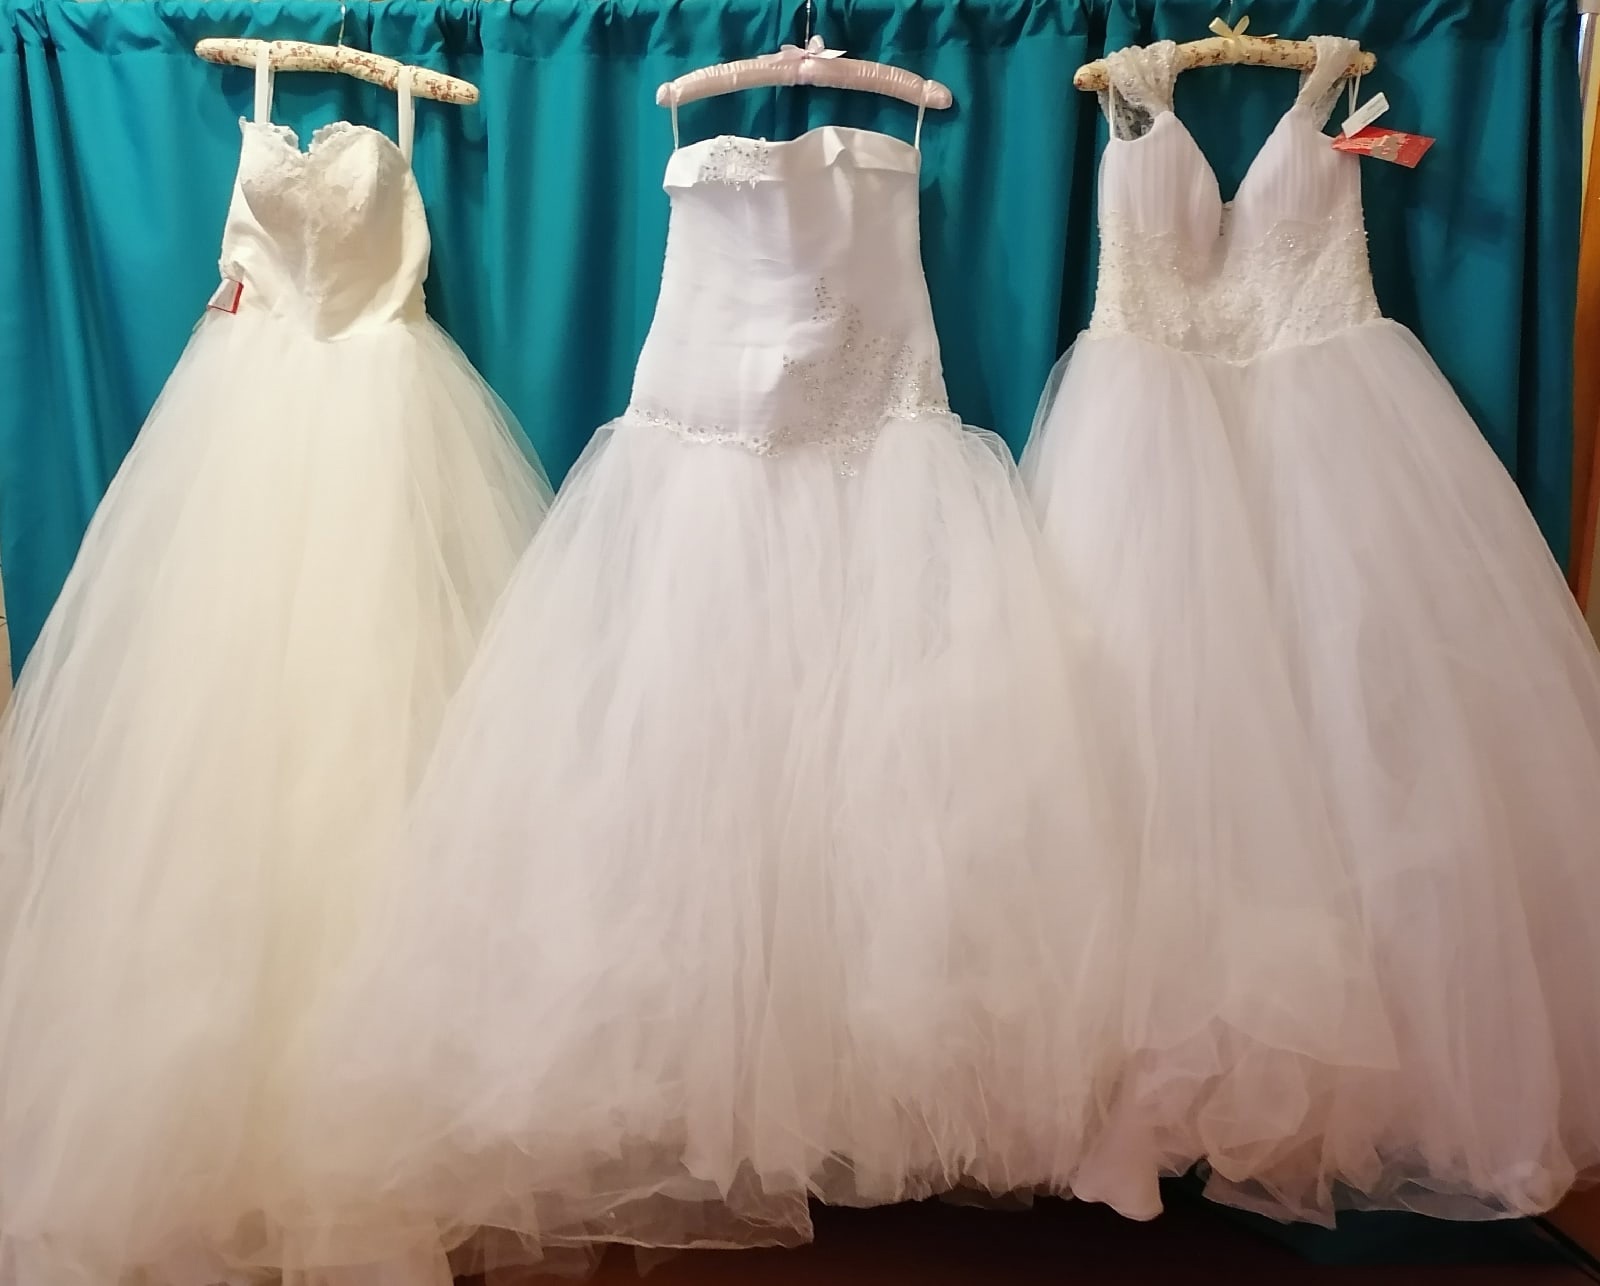 Трем невестам в Юрьевце подарят свадебные платья